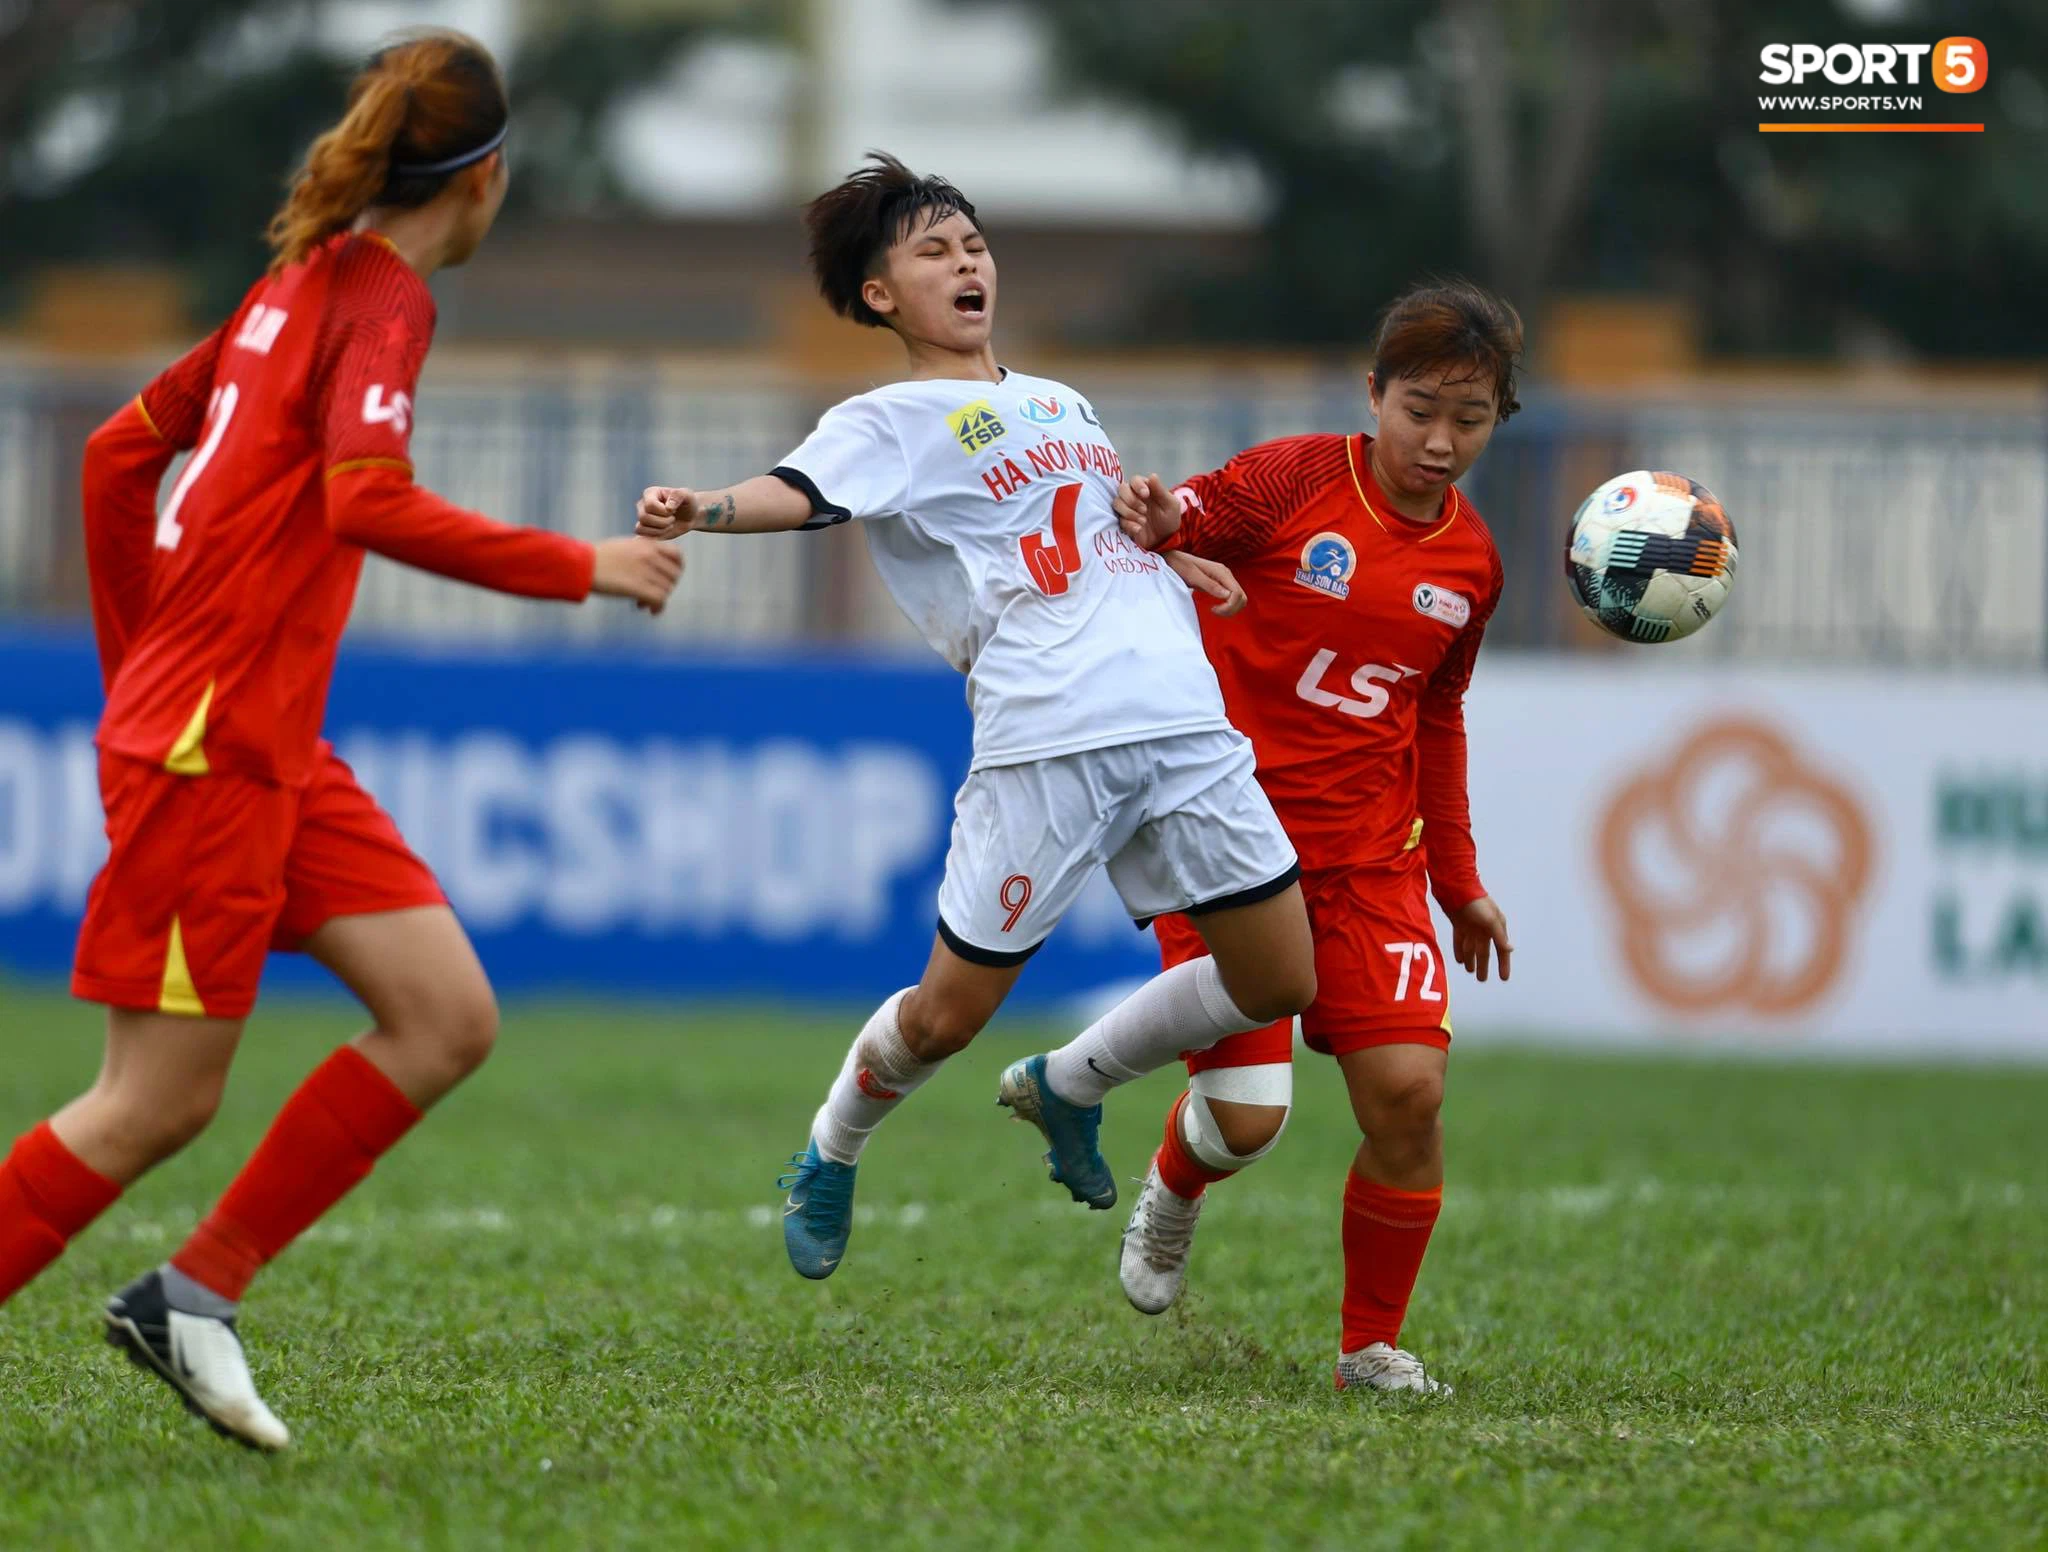 U19 nữ Hà Nội Watabe lấy lại phong độ, thắng đậm 4-0 trước U19 TP.HCM - Ảnh 1.